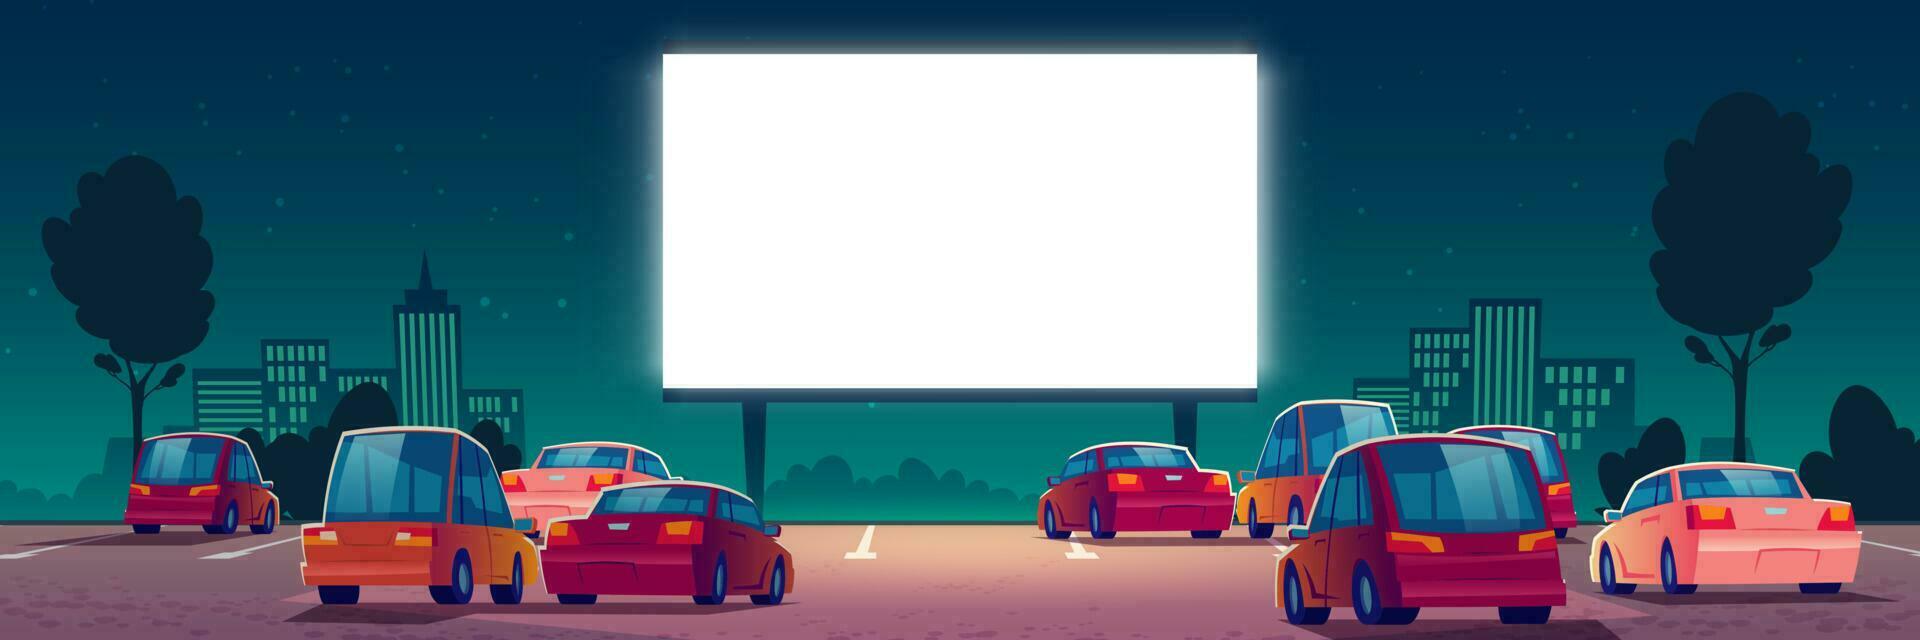 buitenshuis bioscoop, drive-in film theater met auto's vector